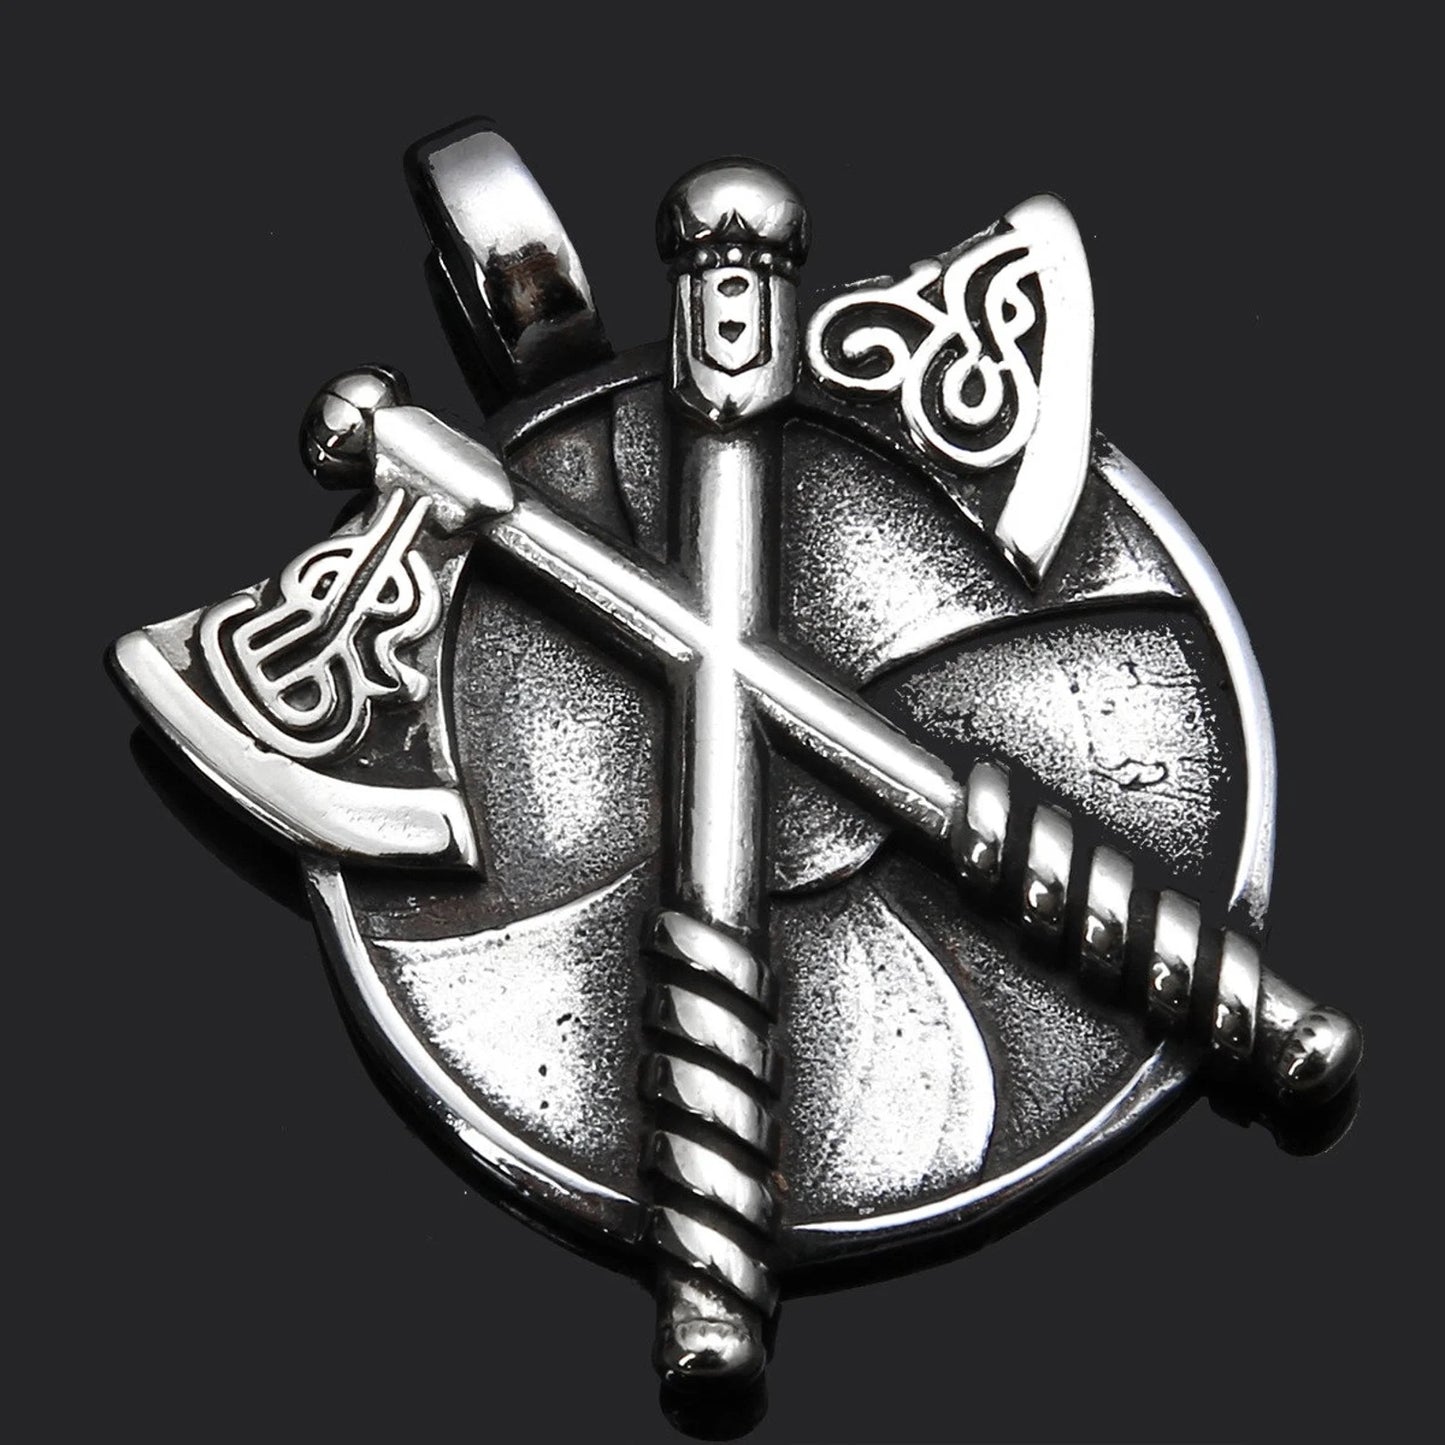 Celtic Norse Pagan Warrior Necklace - Silver